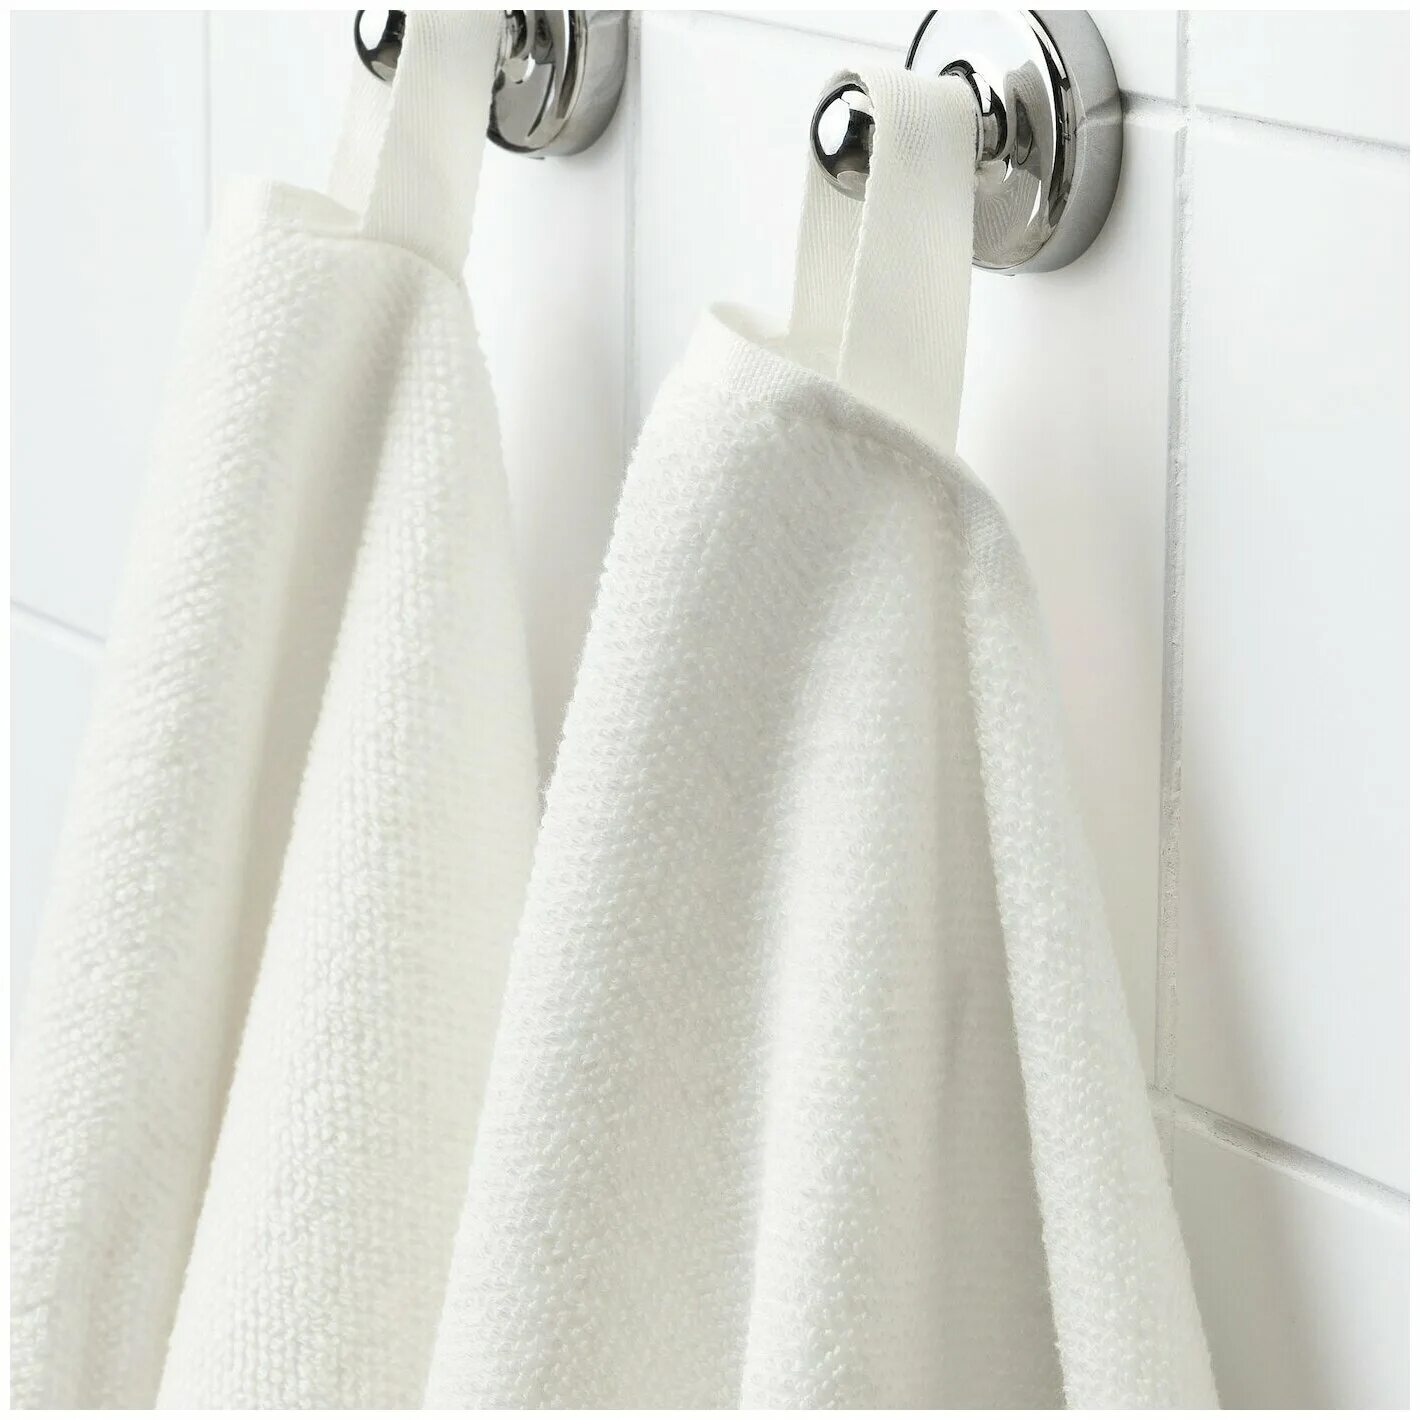 Полотенце икеа купить. Викфьерд полотенце. Стандартное белое полотенце икеа 70x140. Белые полотенца икеа. Полотенчики икеа.